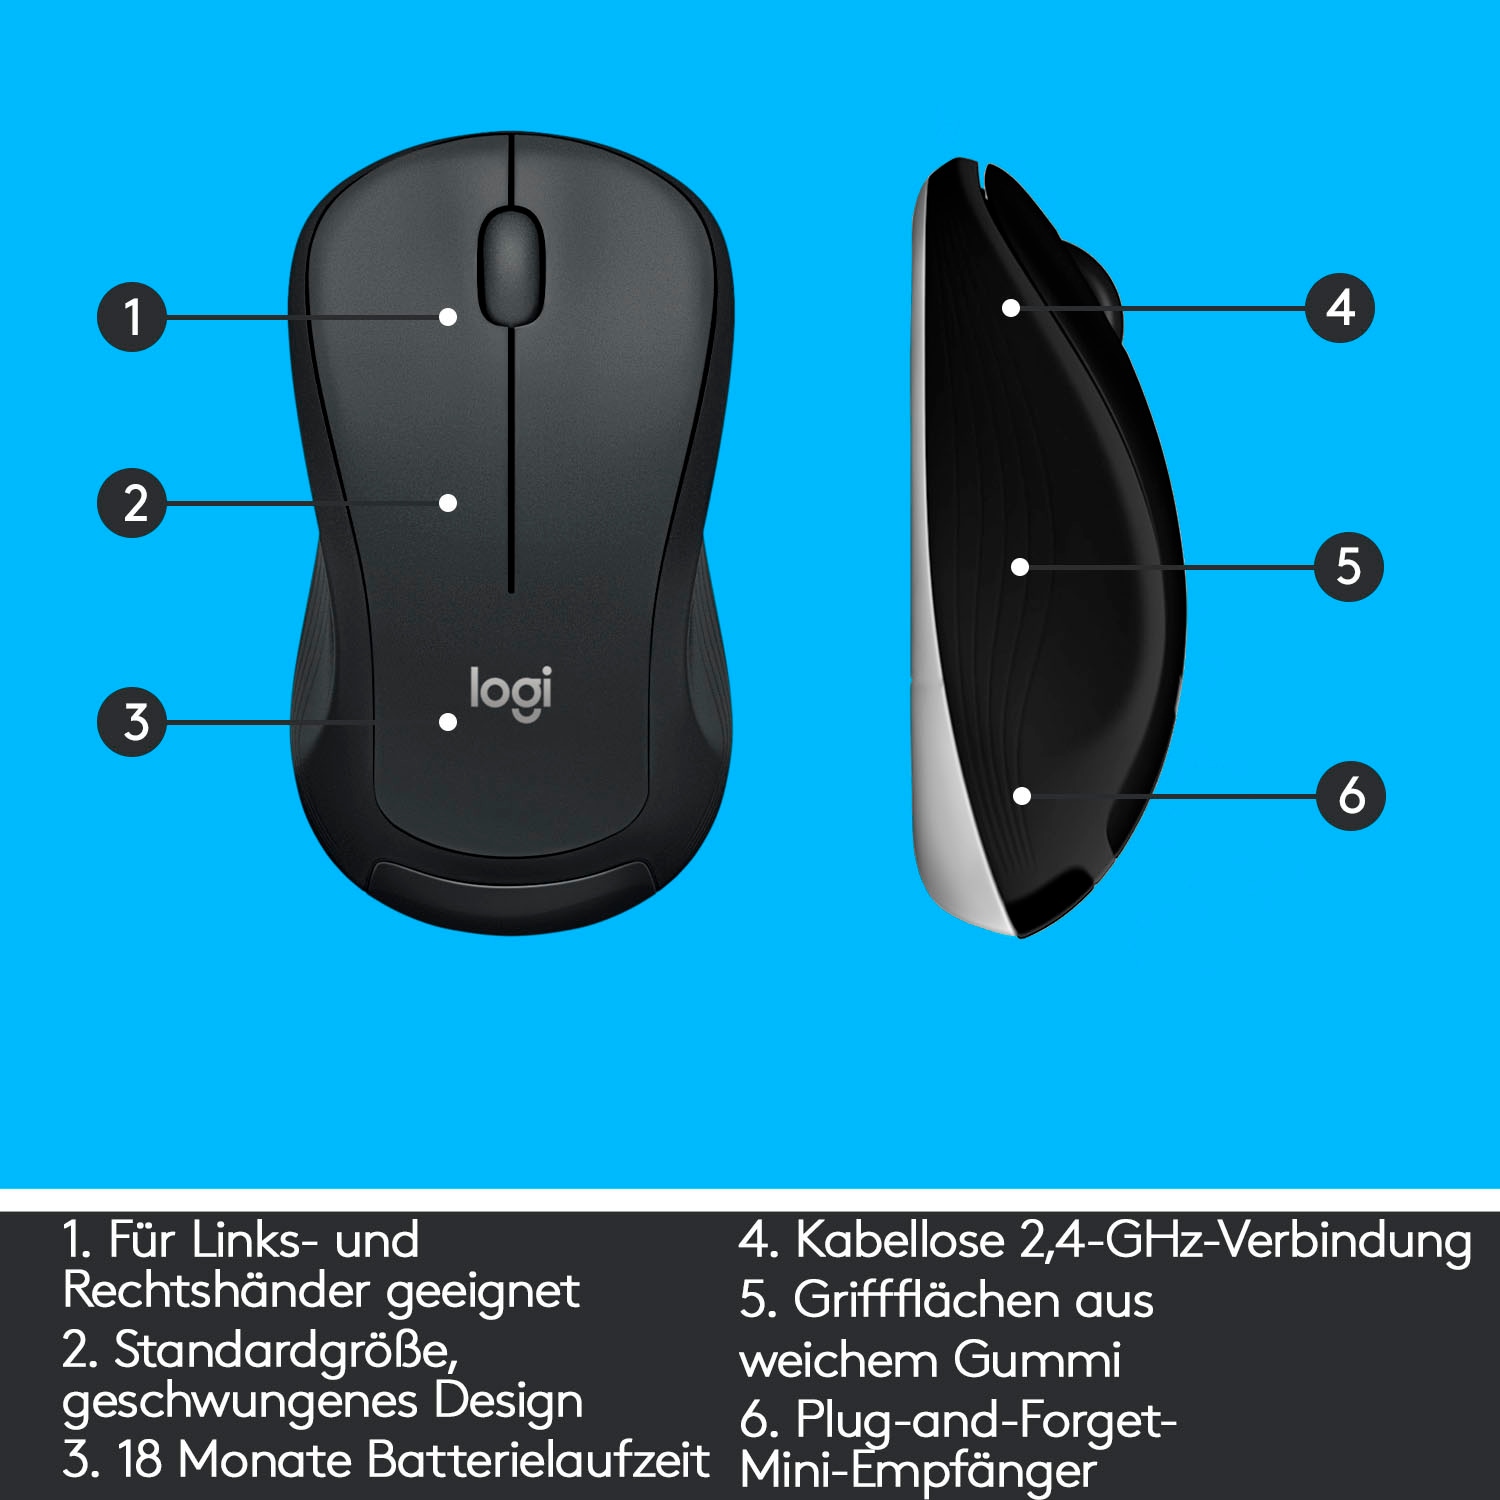 Logitech Tastatur- und Maus-Set »MK540 ADVANCED Kabellose«, für Windows, USB, Sondertasten, 3 Jahre Batterielaufzeit, PC, Laptop